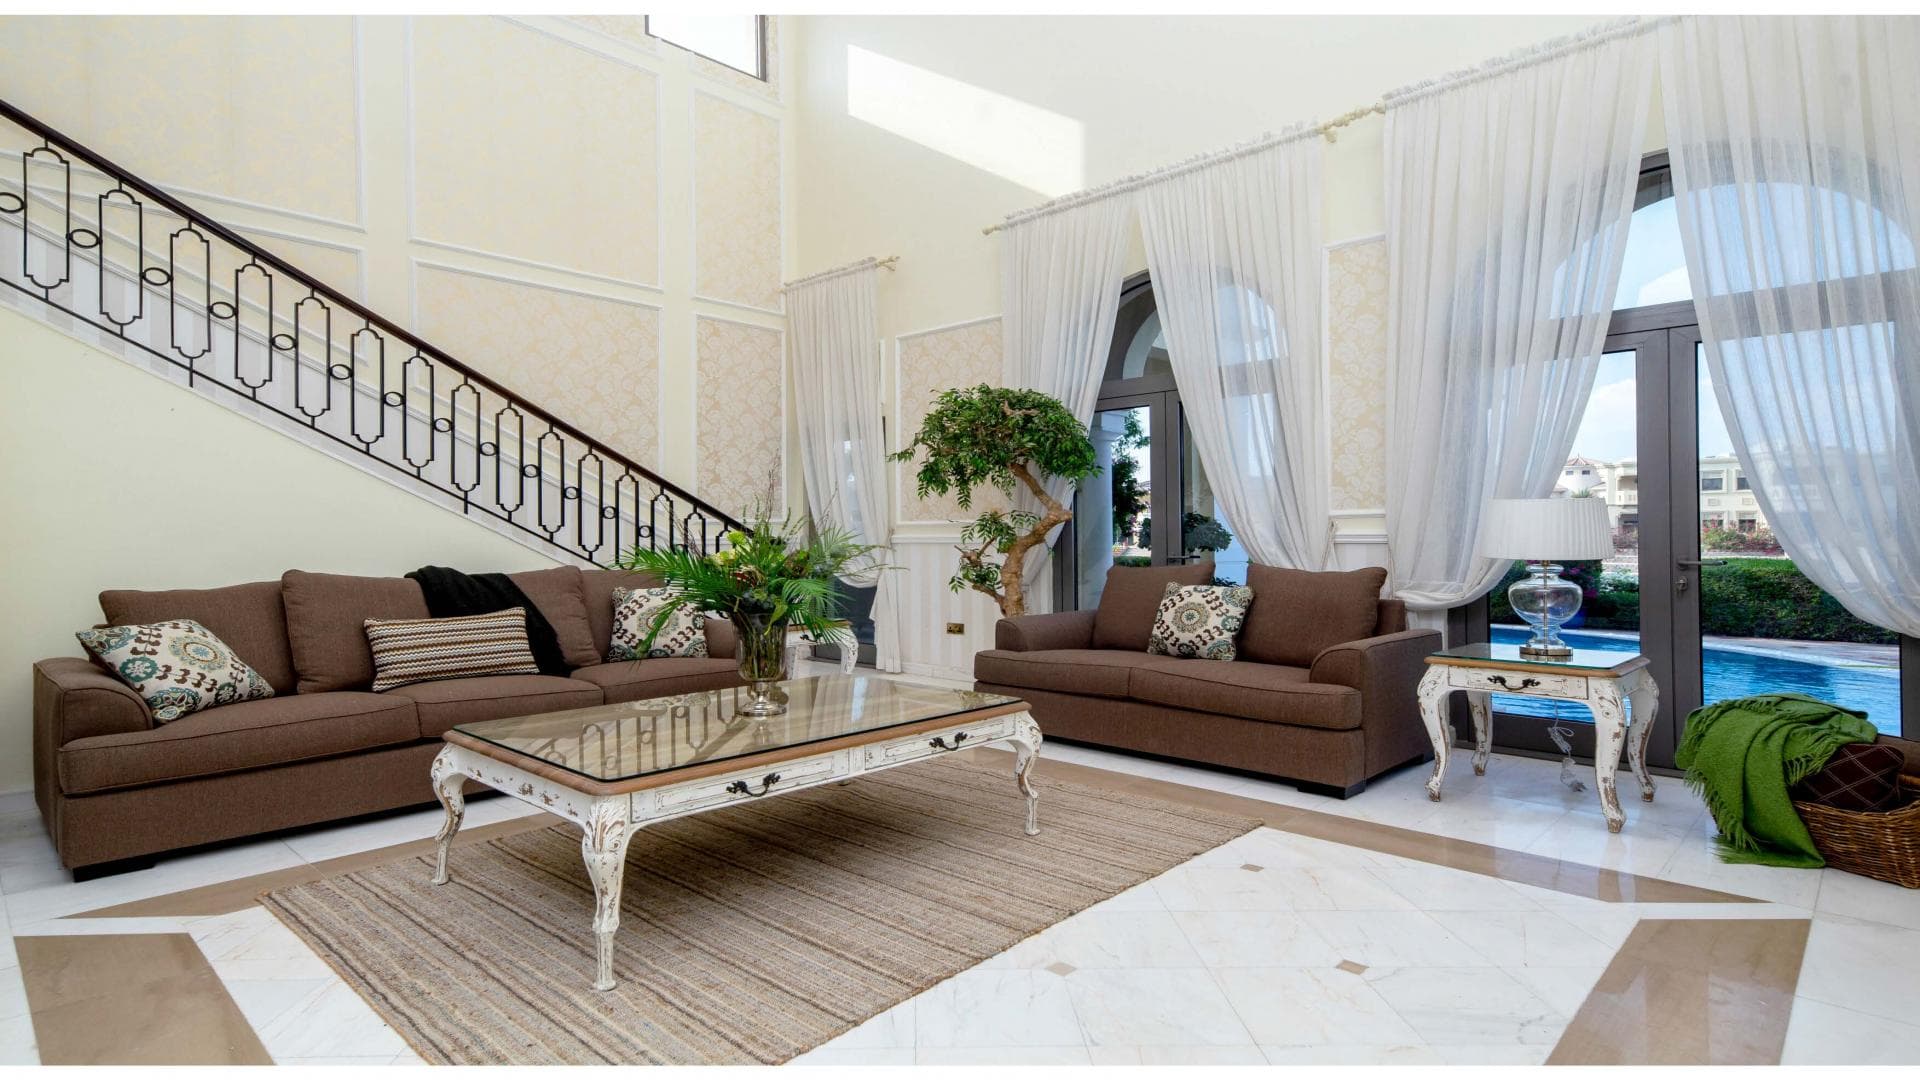 7 Bedroom Villa For Rent Al Reem 2 Lp35747 2250ad60f49b8000.jpg